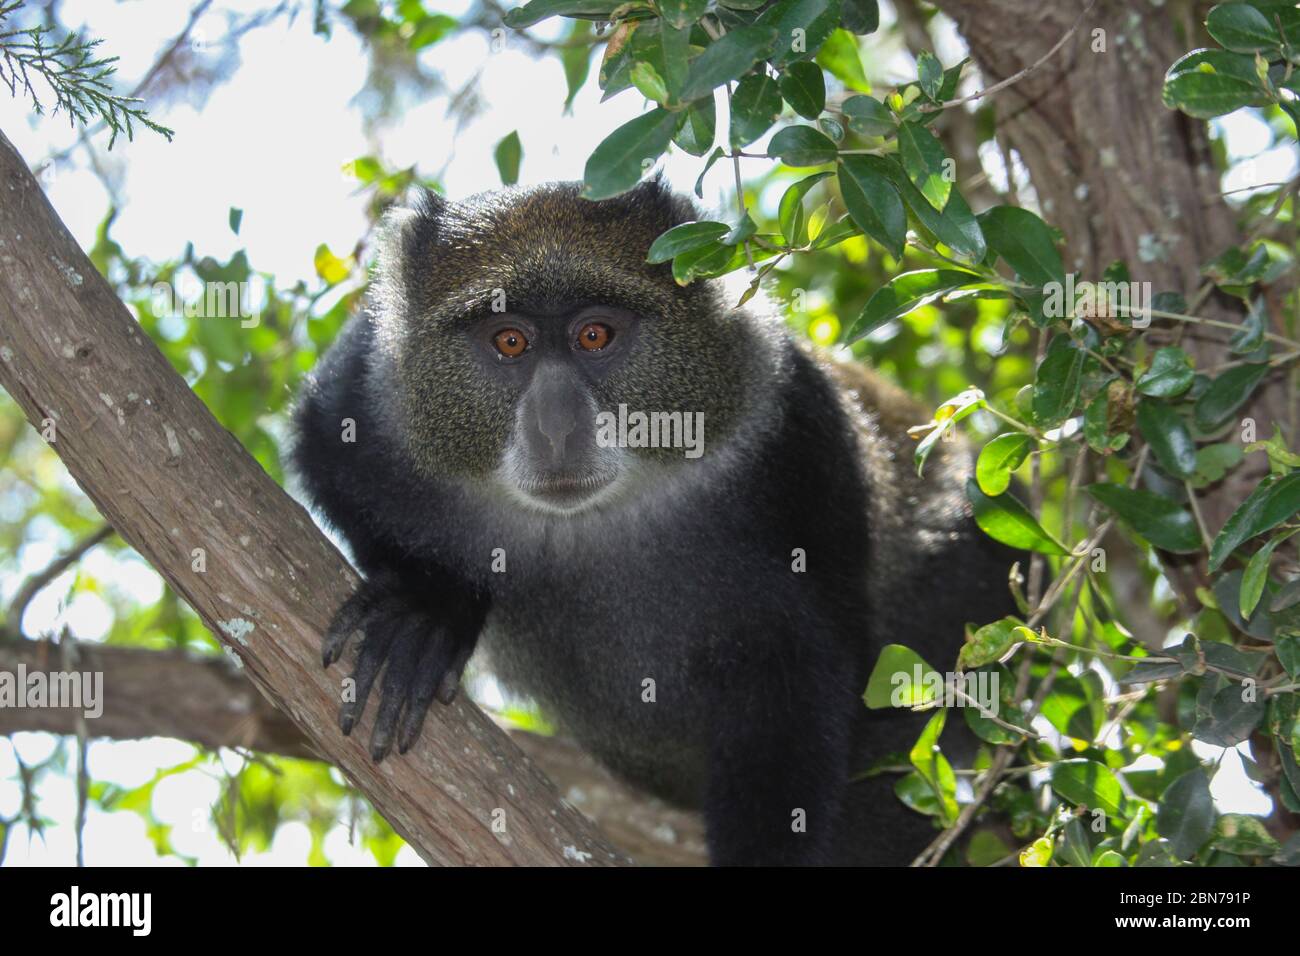 La scimmia di Sykes (Cercopithecus albogularis), nota anche come scimmia a gola bianca o scimmia Samango, in un albero. Questa scimmia vive in truppe, rimandina Foto Stock